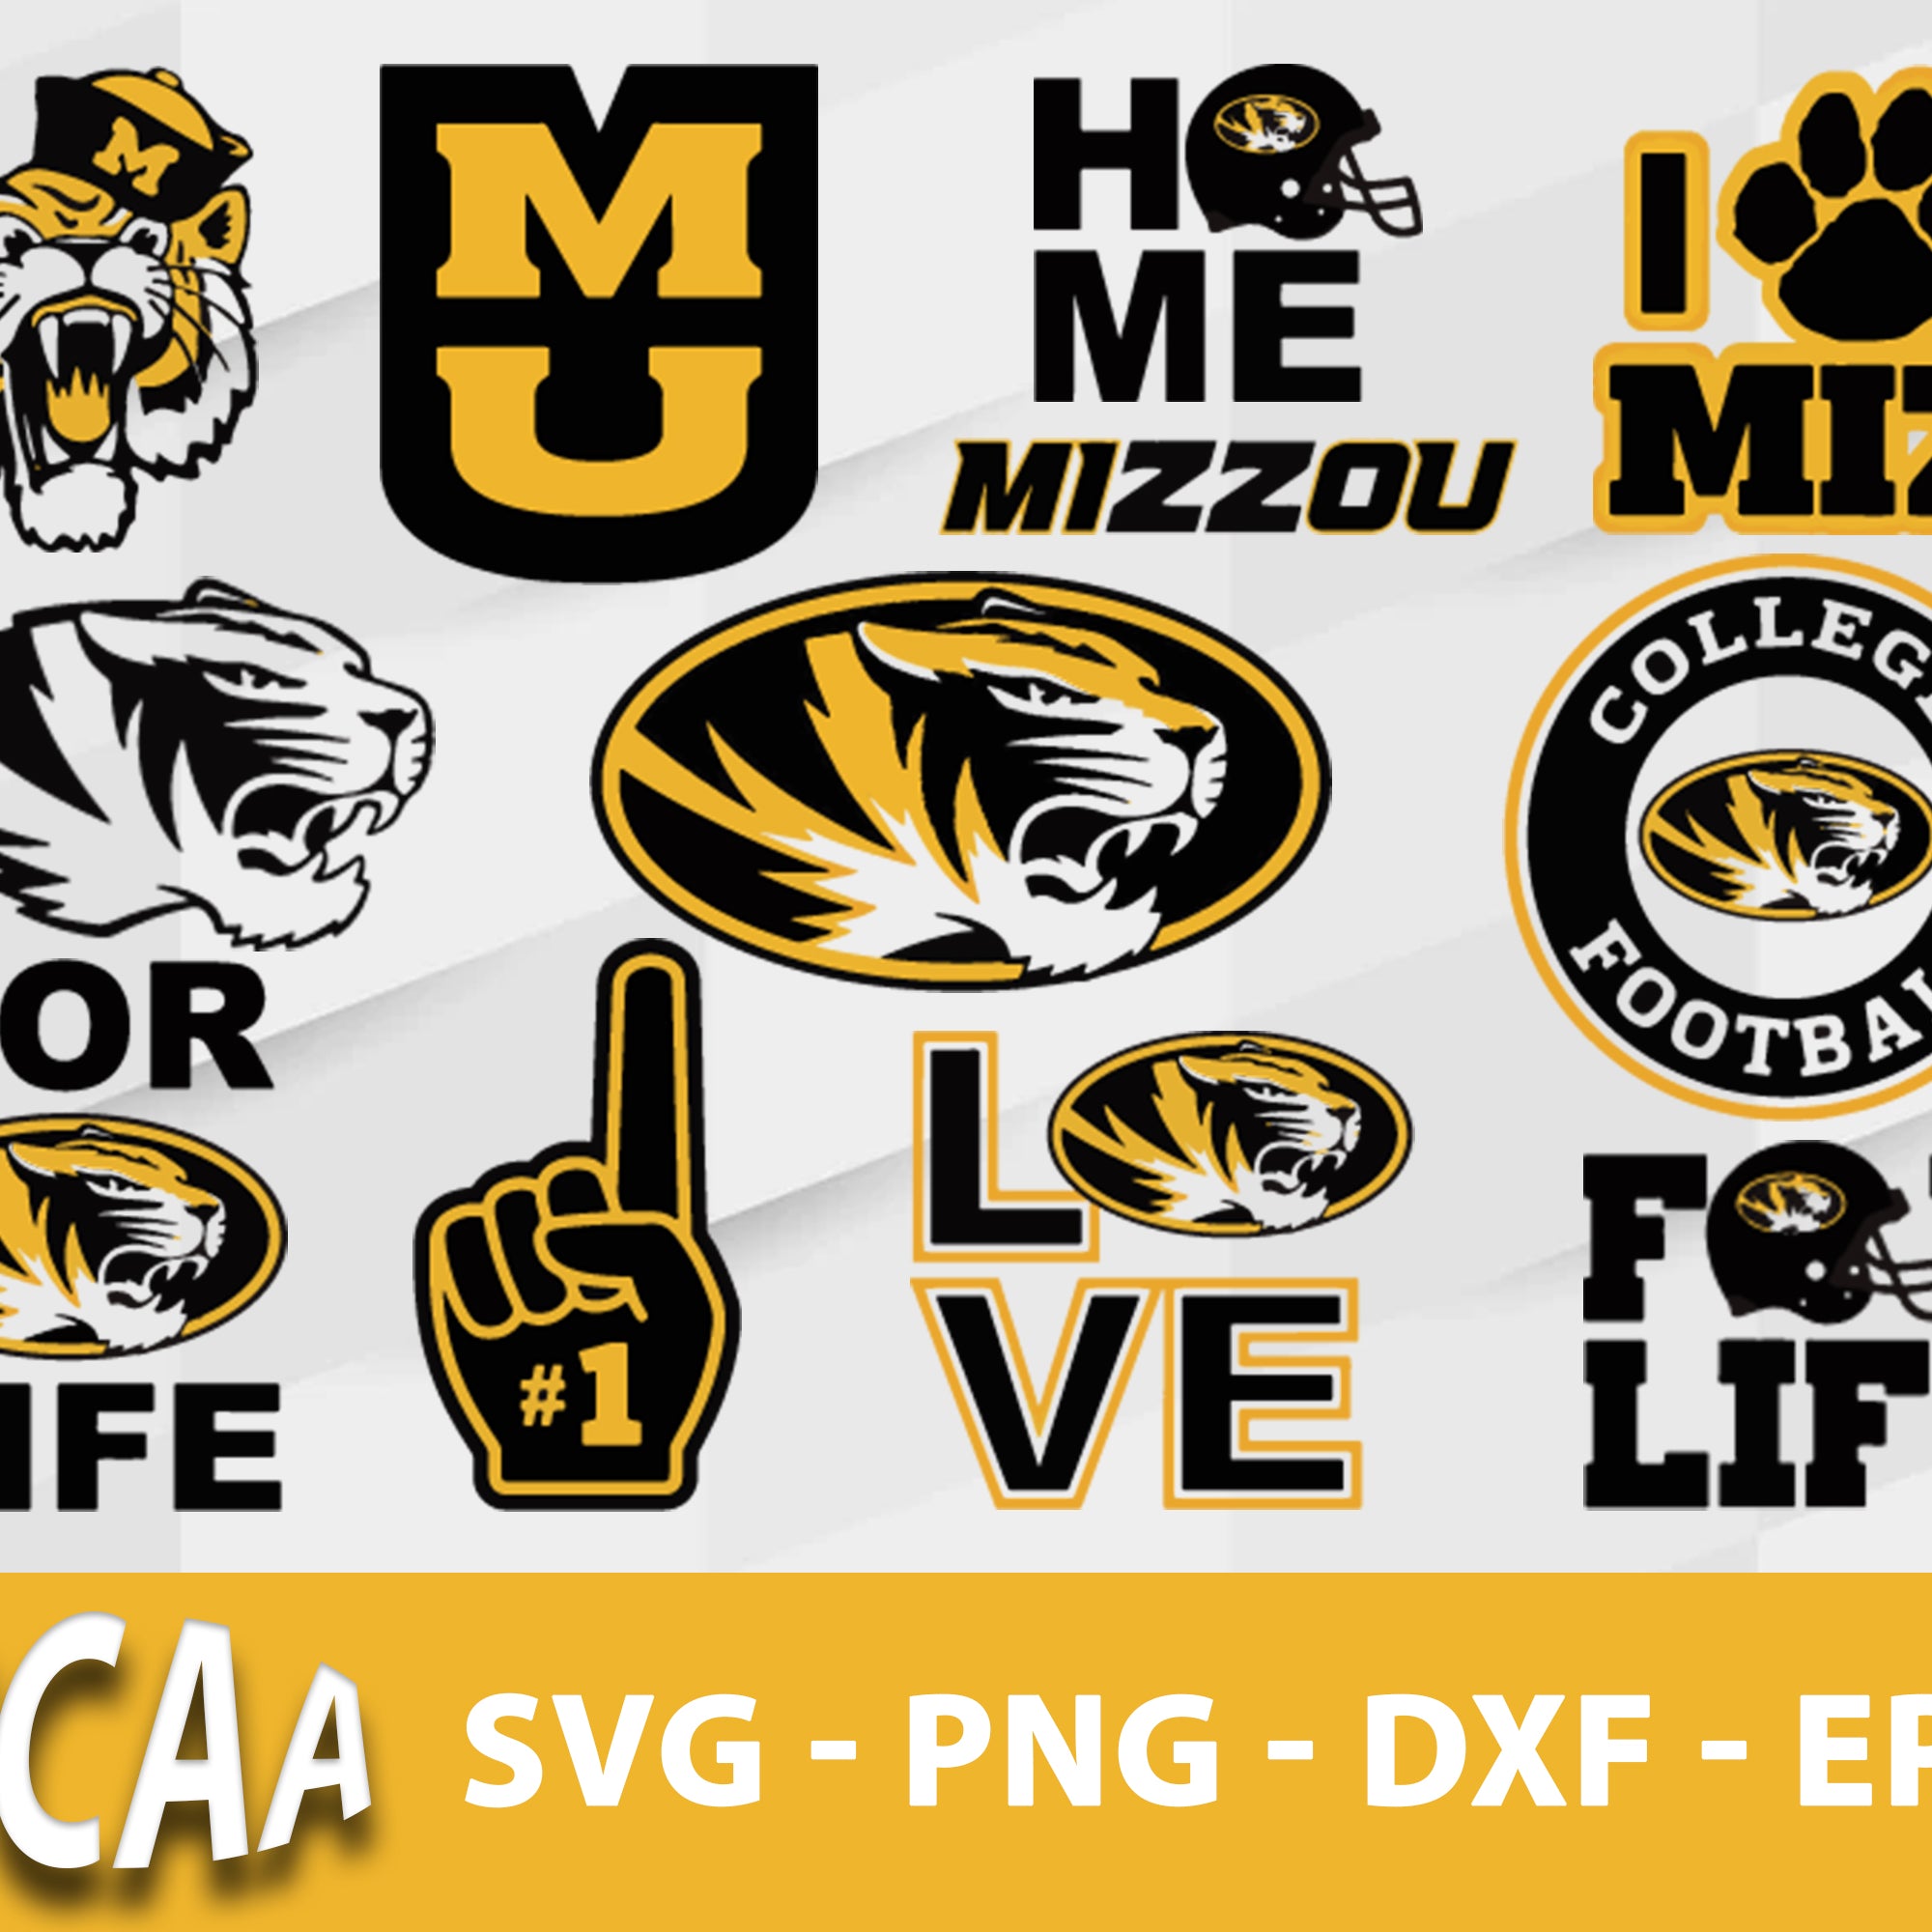 Missouri Tigers Svg Bundle, Missouri Tigers Svg, Sport Svg, Ncaa Svg, Png, Dxf, Eps Digital file.